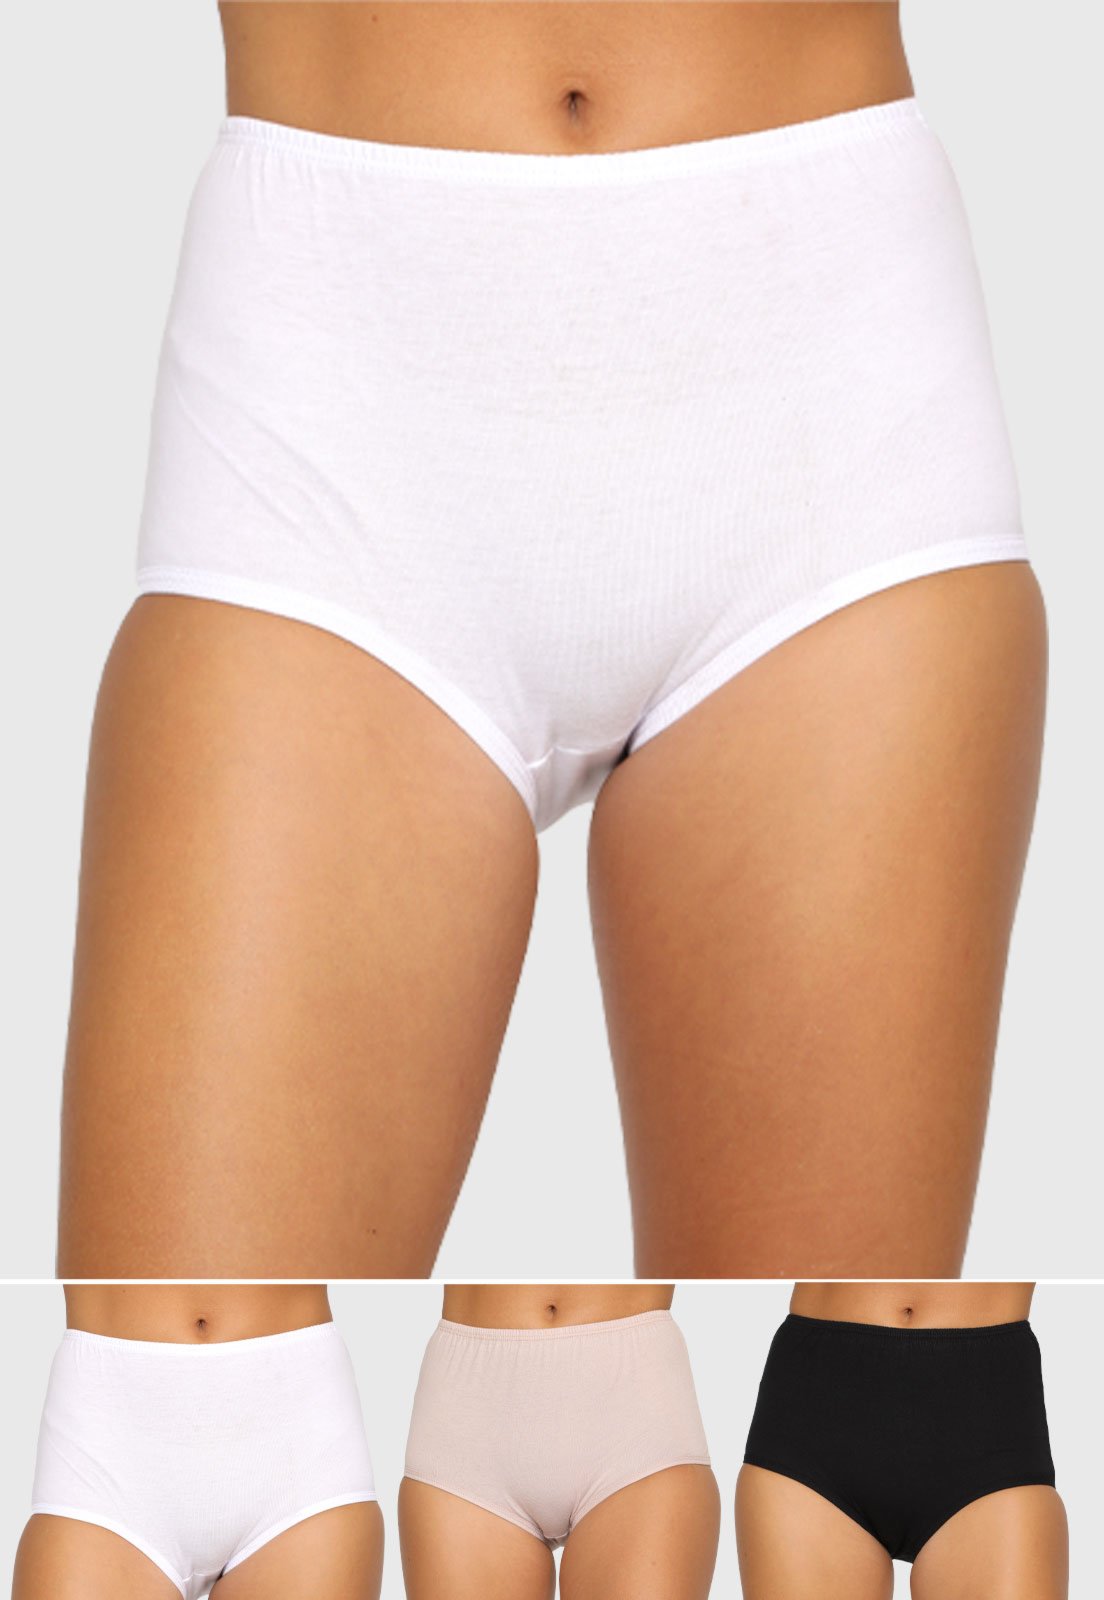 Hering Women's High Waisted 100% Cotton Briefs Panty Underwear